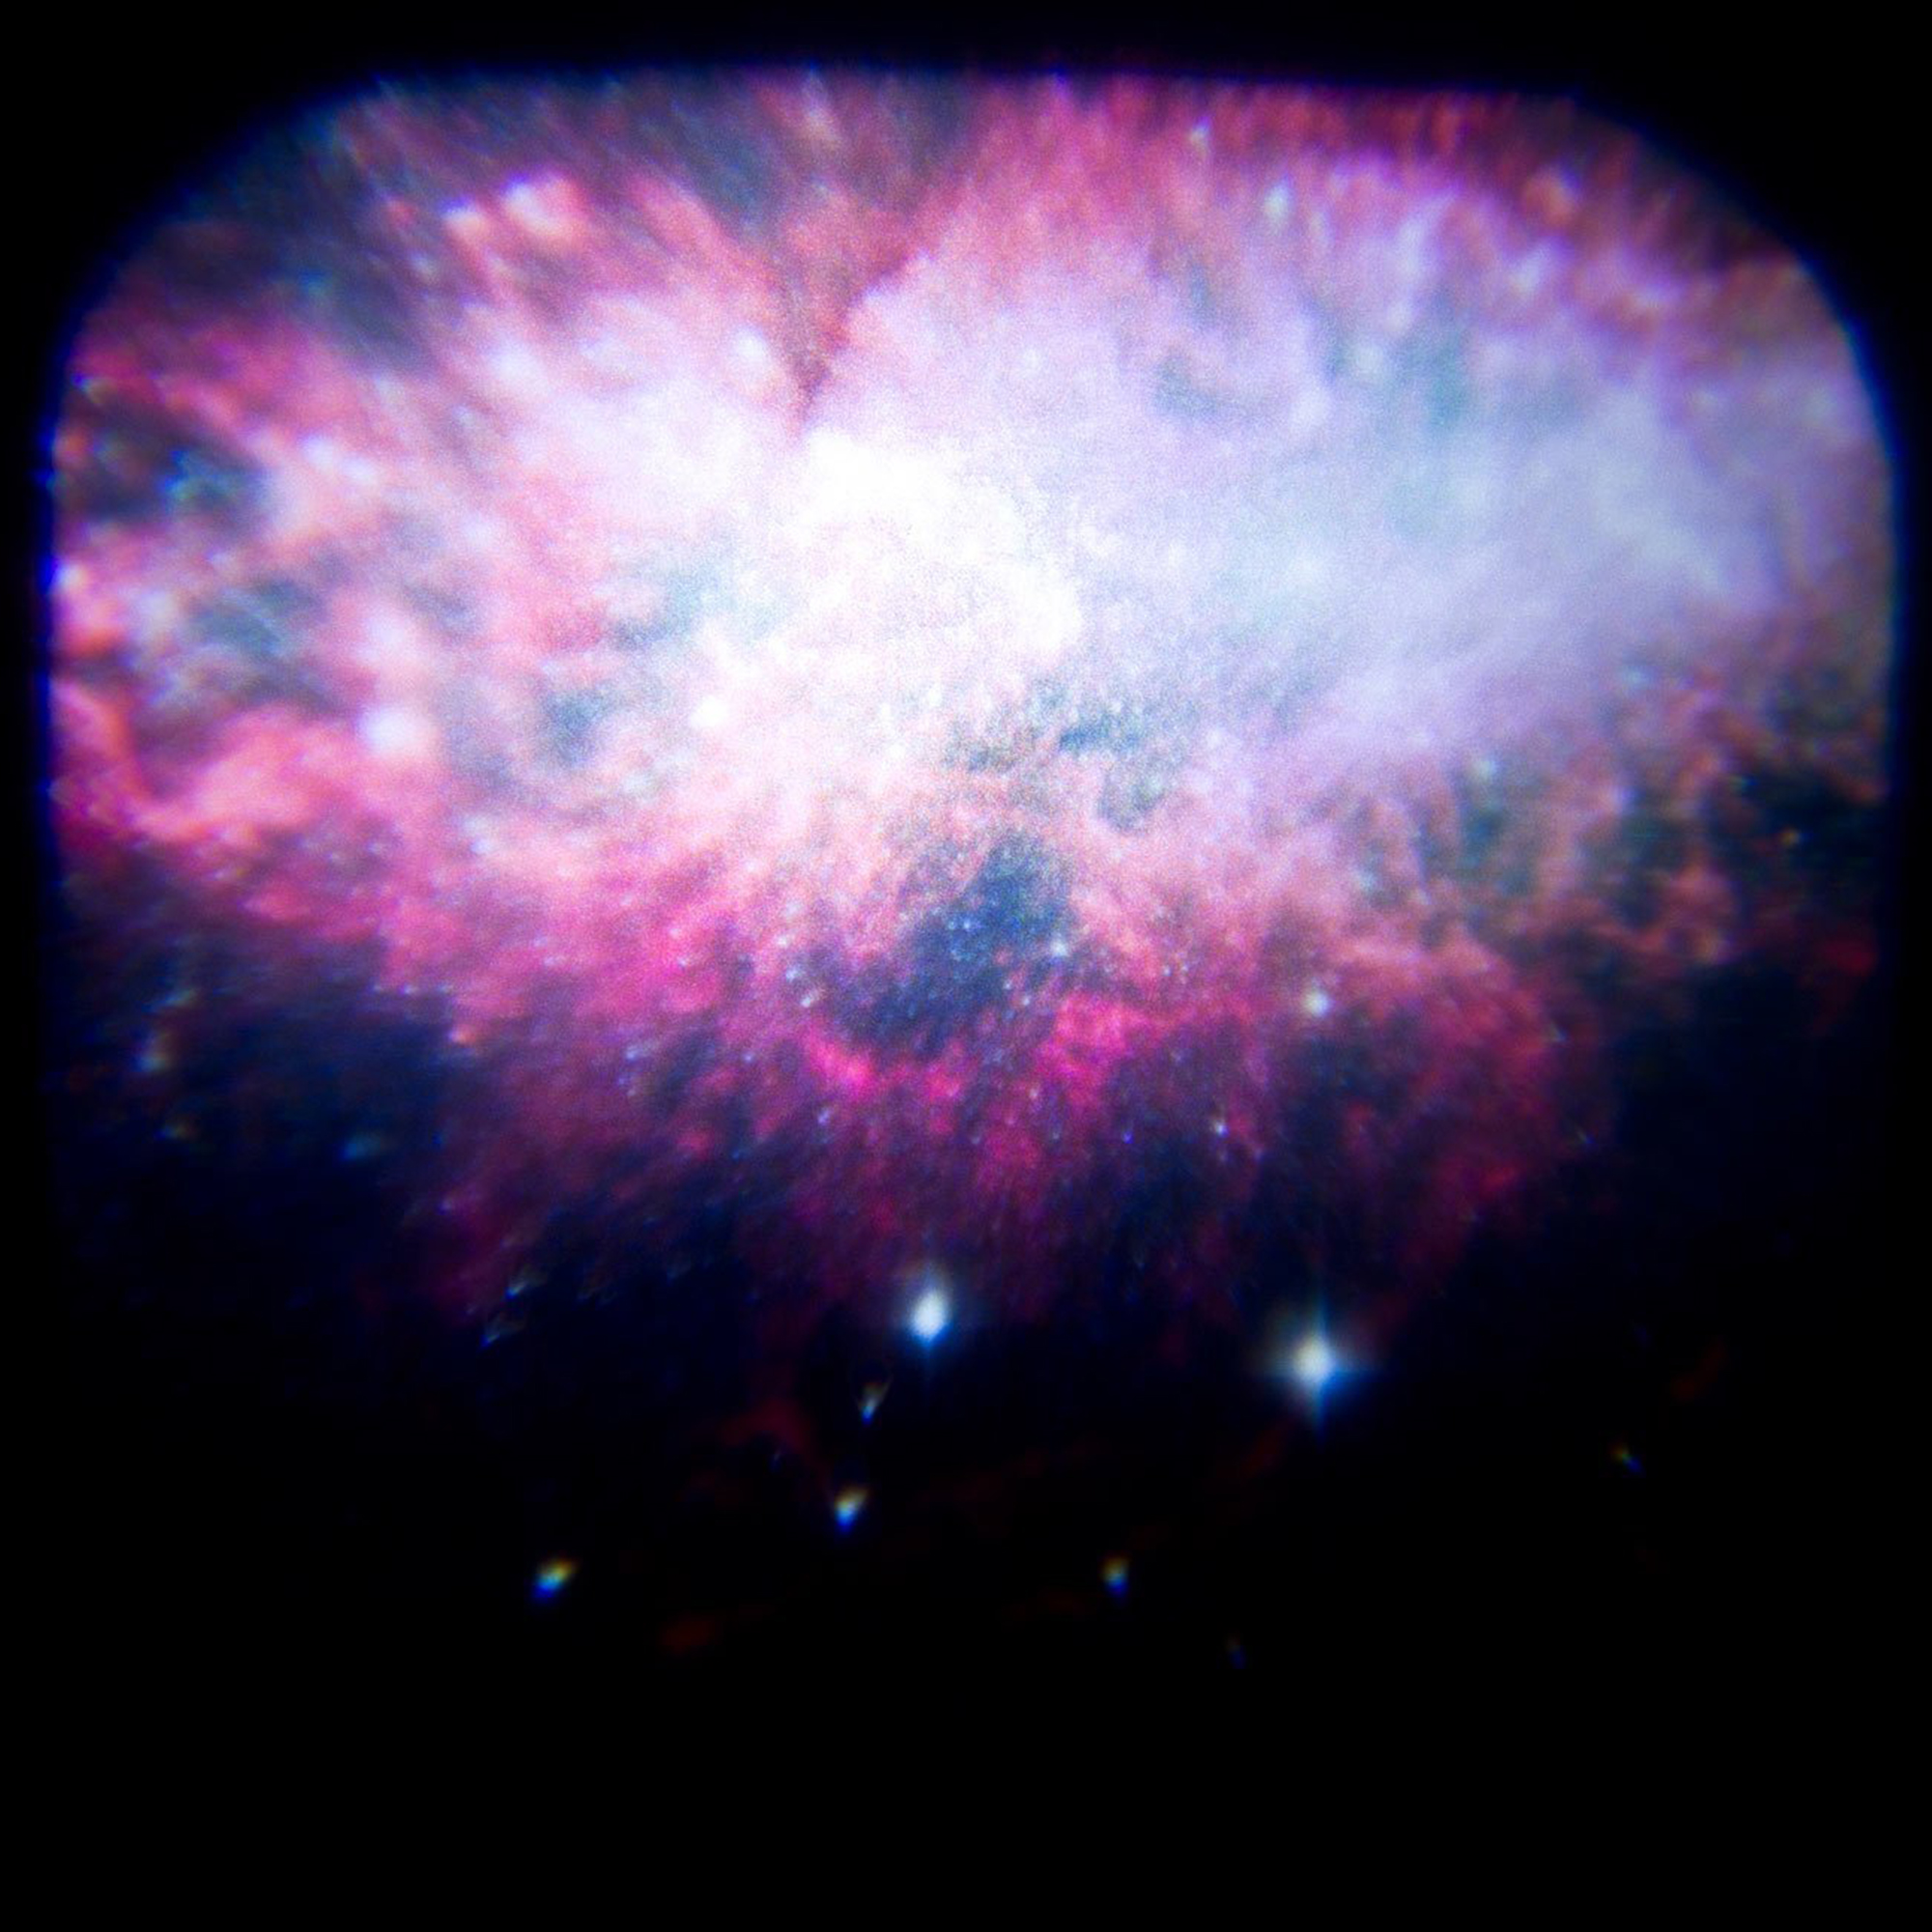 Sternenhimmel Projektor Galaxy sorgt für tolle Lichteffekte